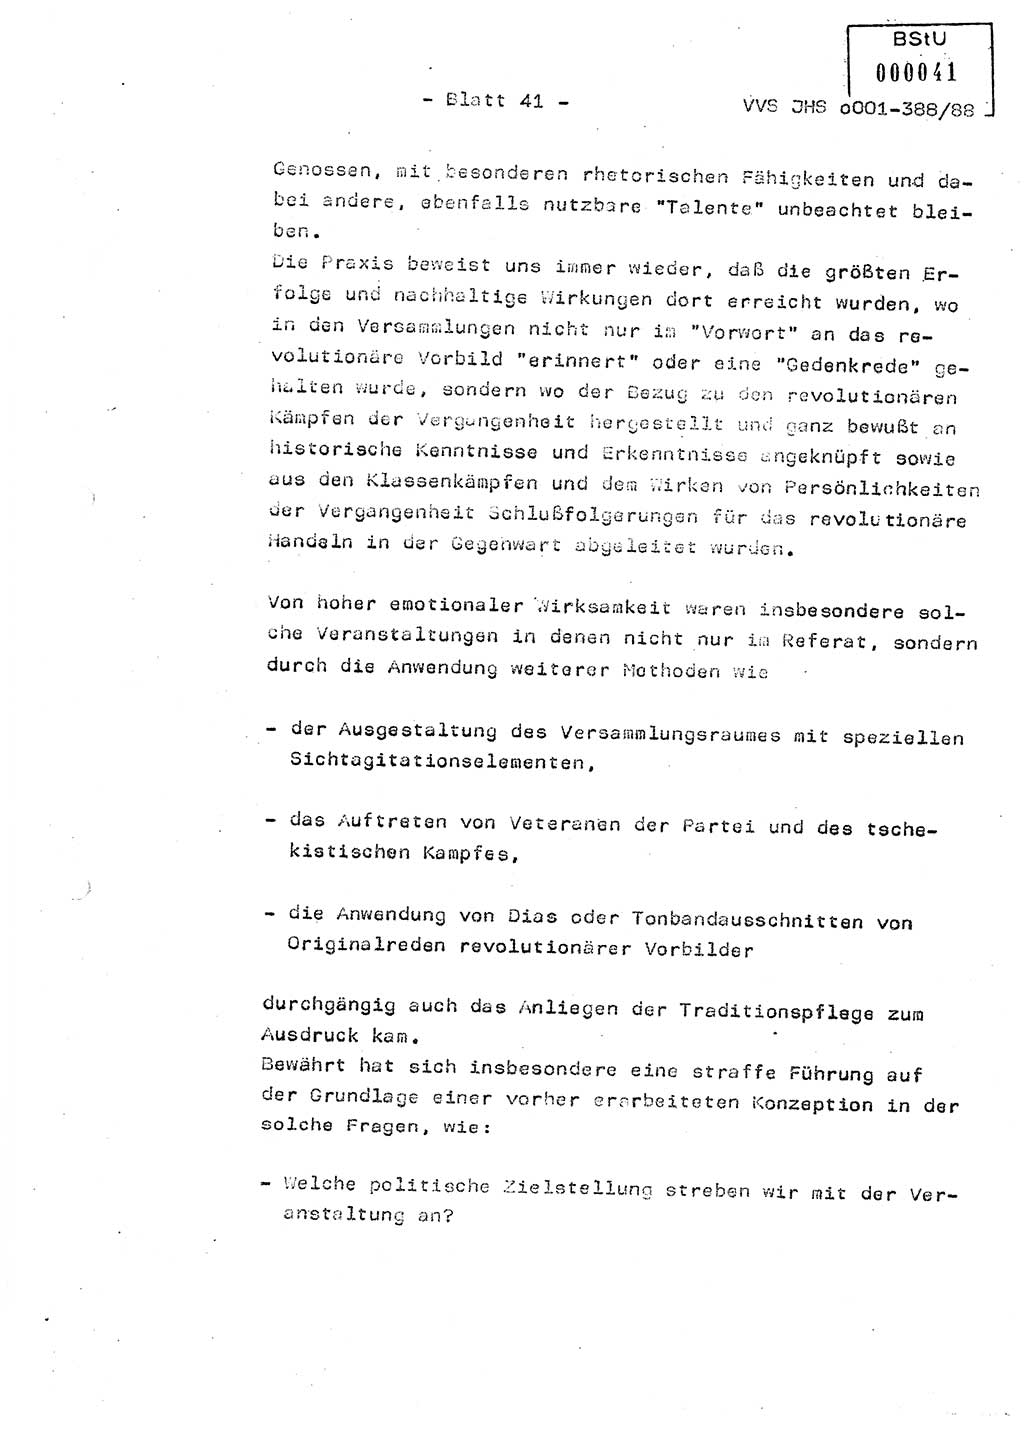 Diplomarbeit Hauptmann Heinz Brixel (Abt. ⅩⅣ), Ministerium für Staatssicherheit (MfS) [Deutsche Demokratische Republik (DDR)], Juristische Hochschule (JHS), Vertrauliche Verschlußsache (VVS) o001-388/88, Potsdam 1988, Blatt 41 (Dipl.-Arb. MfS DDR JHS VVS o001-388/88 1988, Bl. 41)